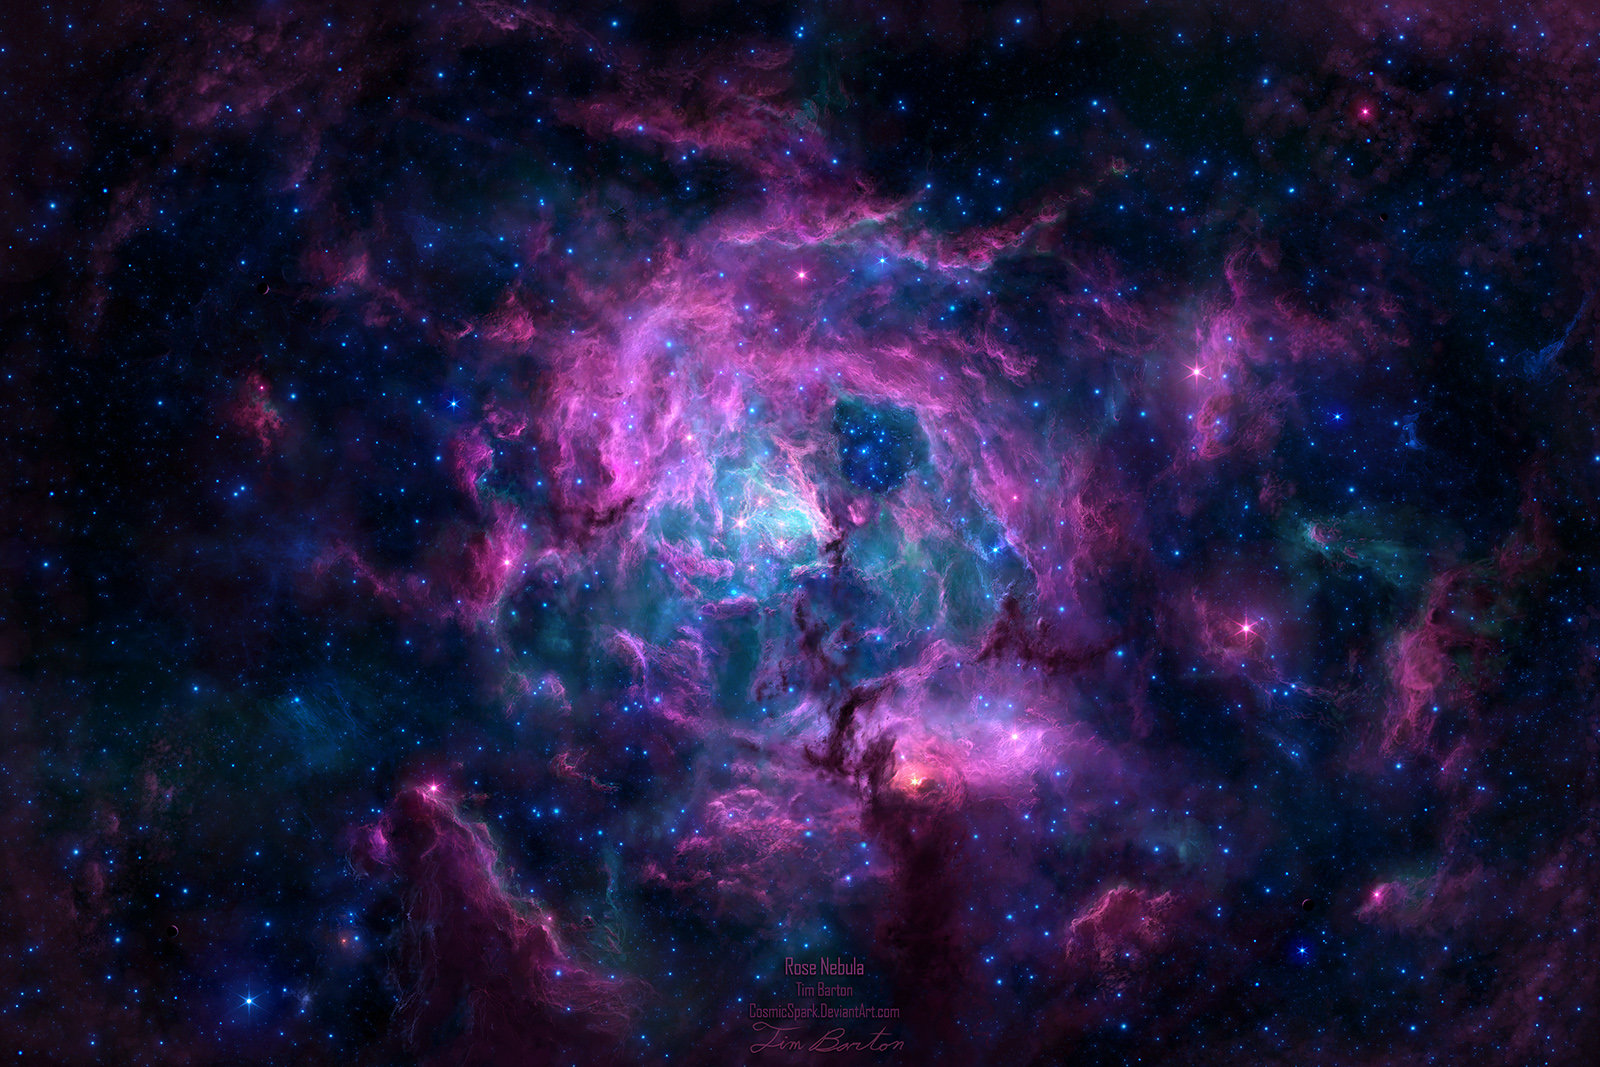 Những hình ảnh của chòm sao Hồng mang đến một vẻ đẹp thần thoại và huyền bí. Hãy xem những bức ảnh này để khám phá những điều mới lạ và thú vị đến từ vũ trụ rộng lớn.